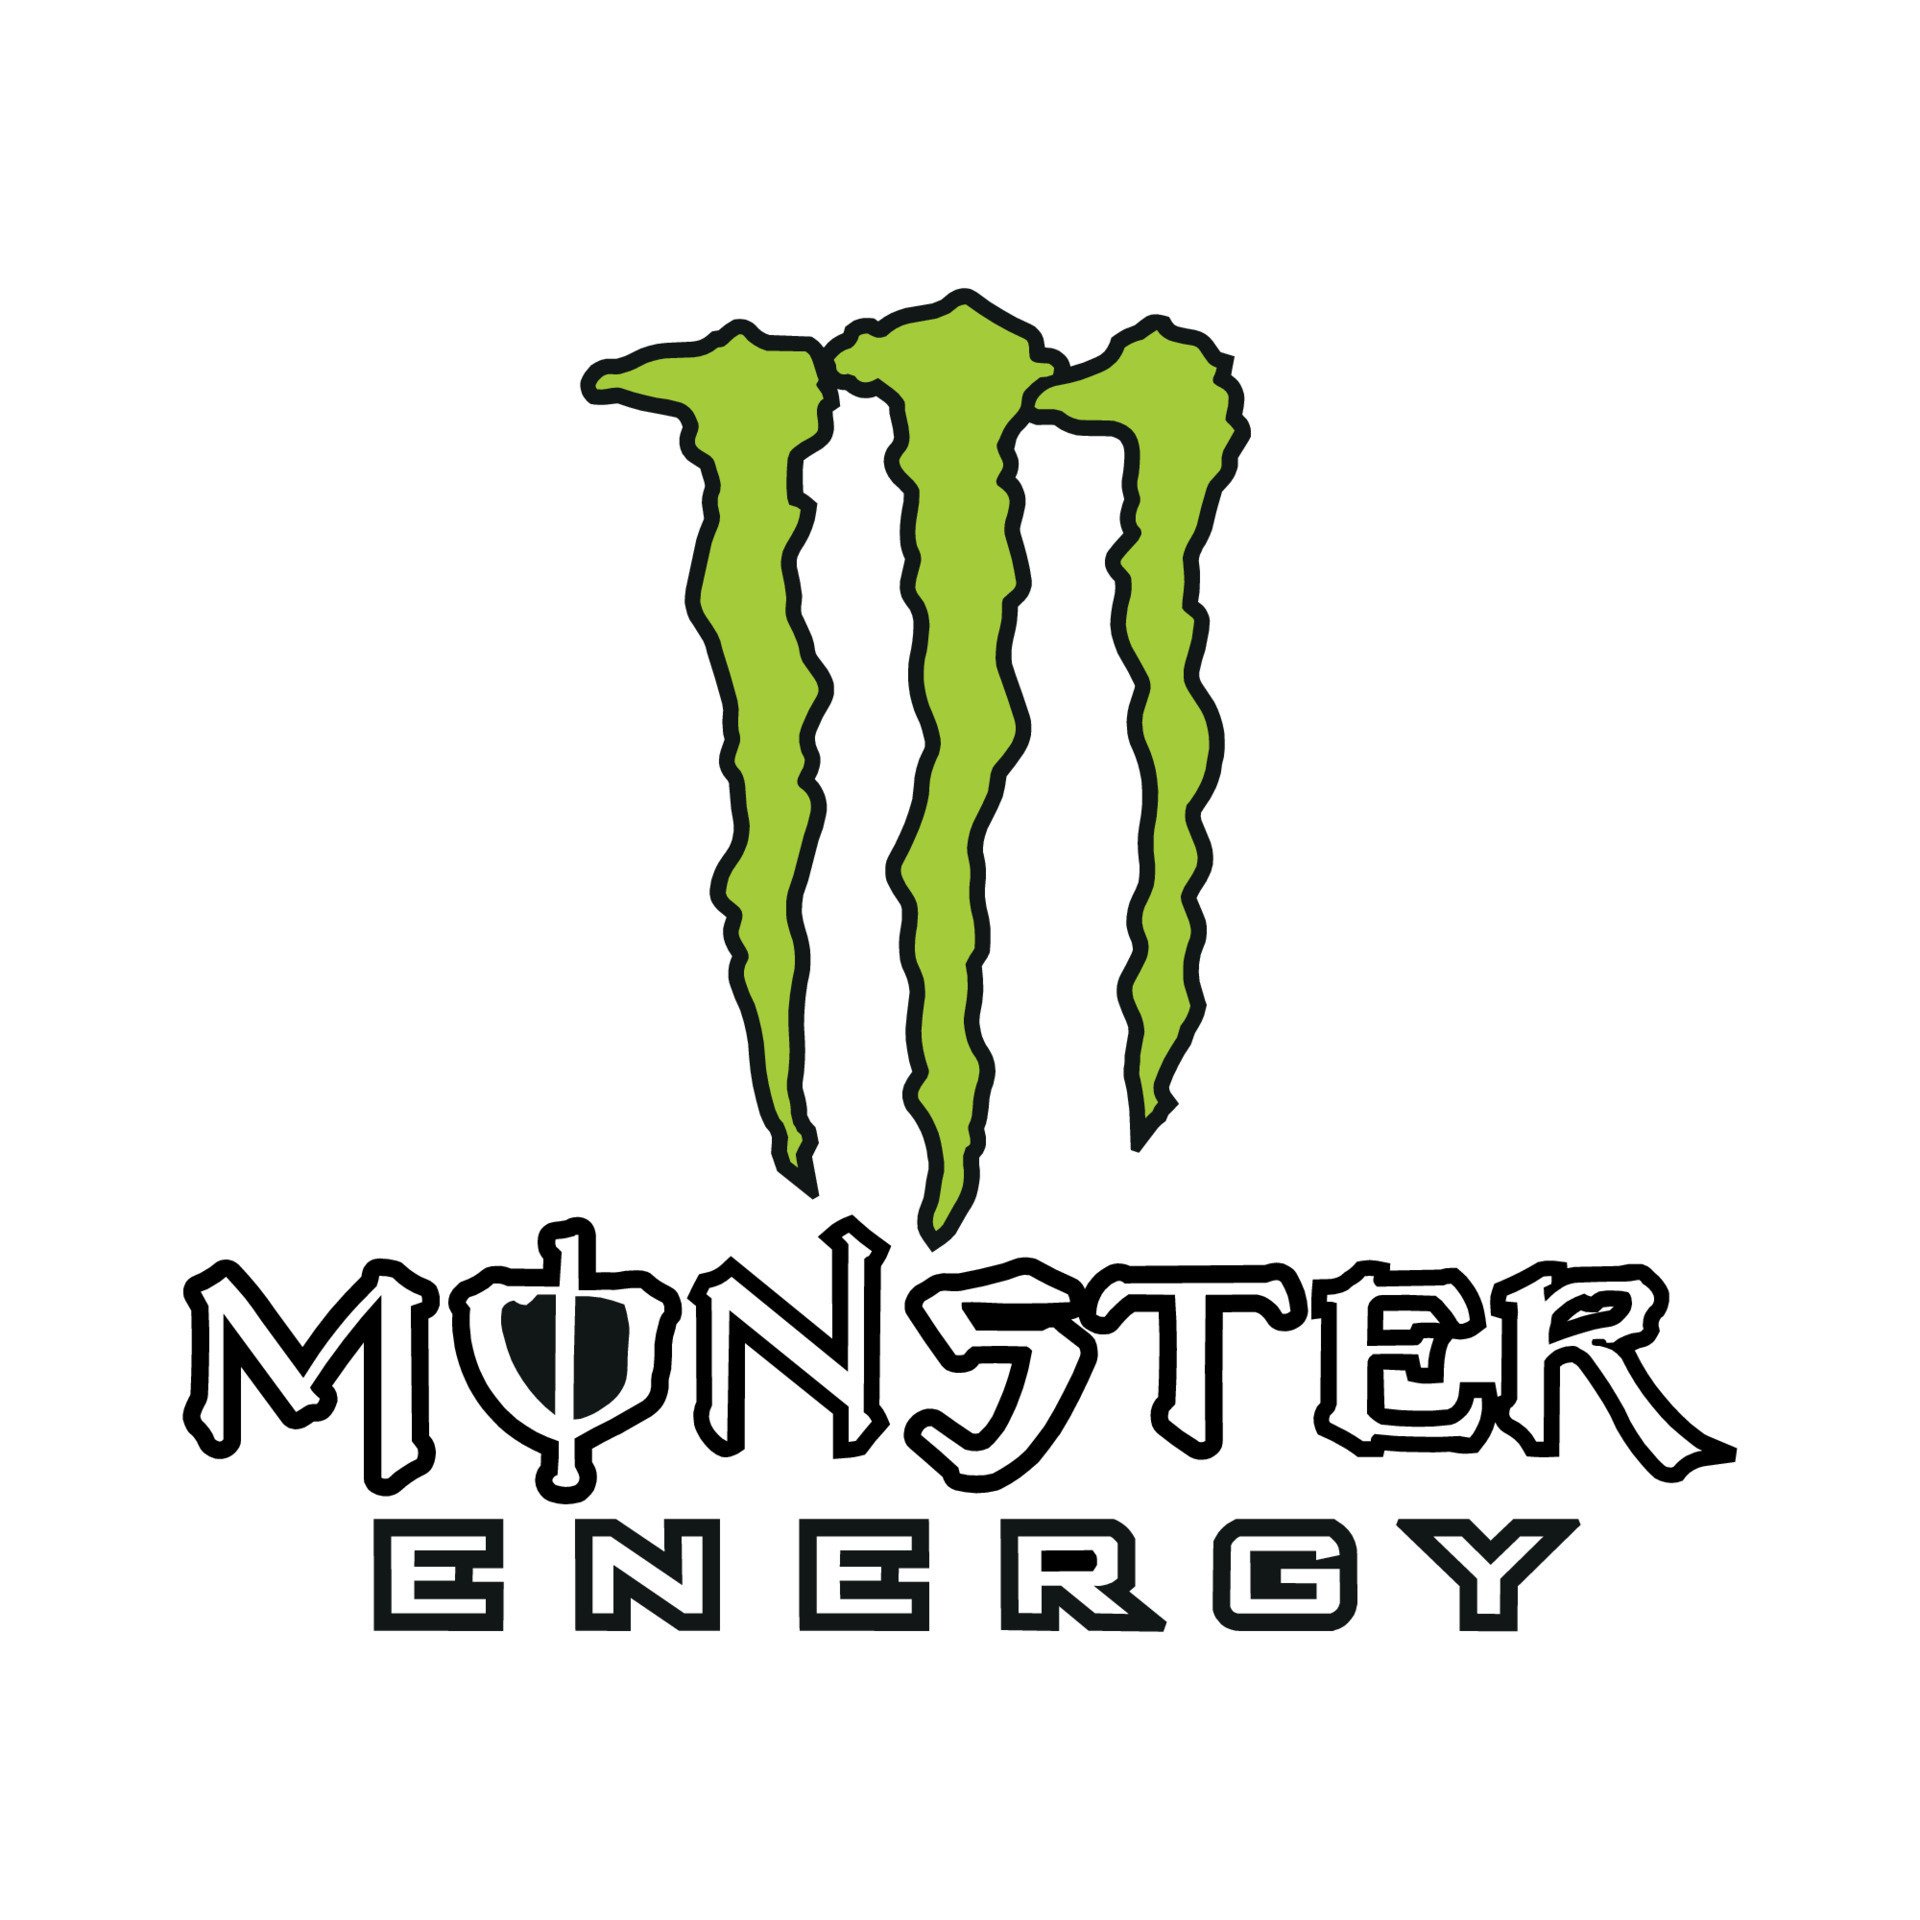 monster-energy-logo-on-transparent-background-free-vector.jpg